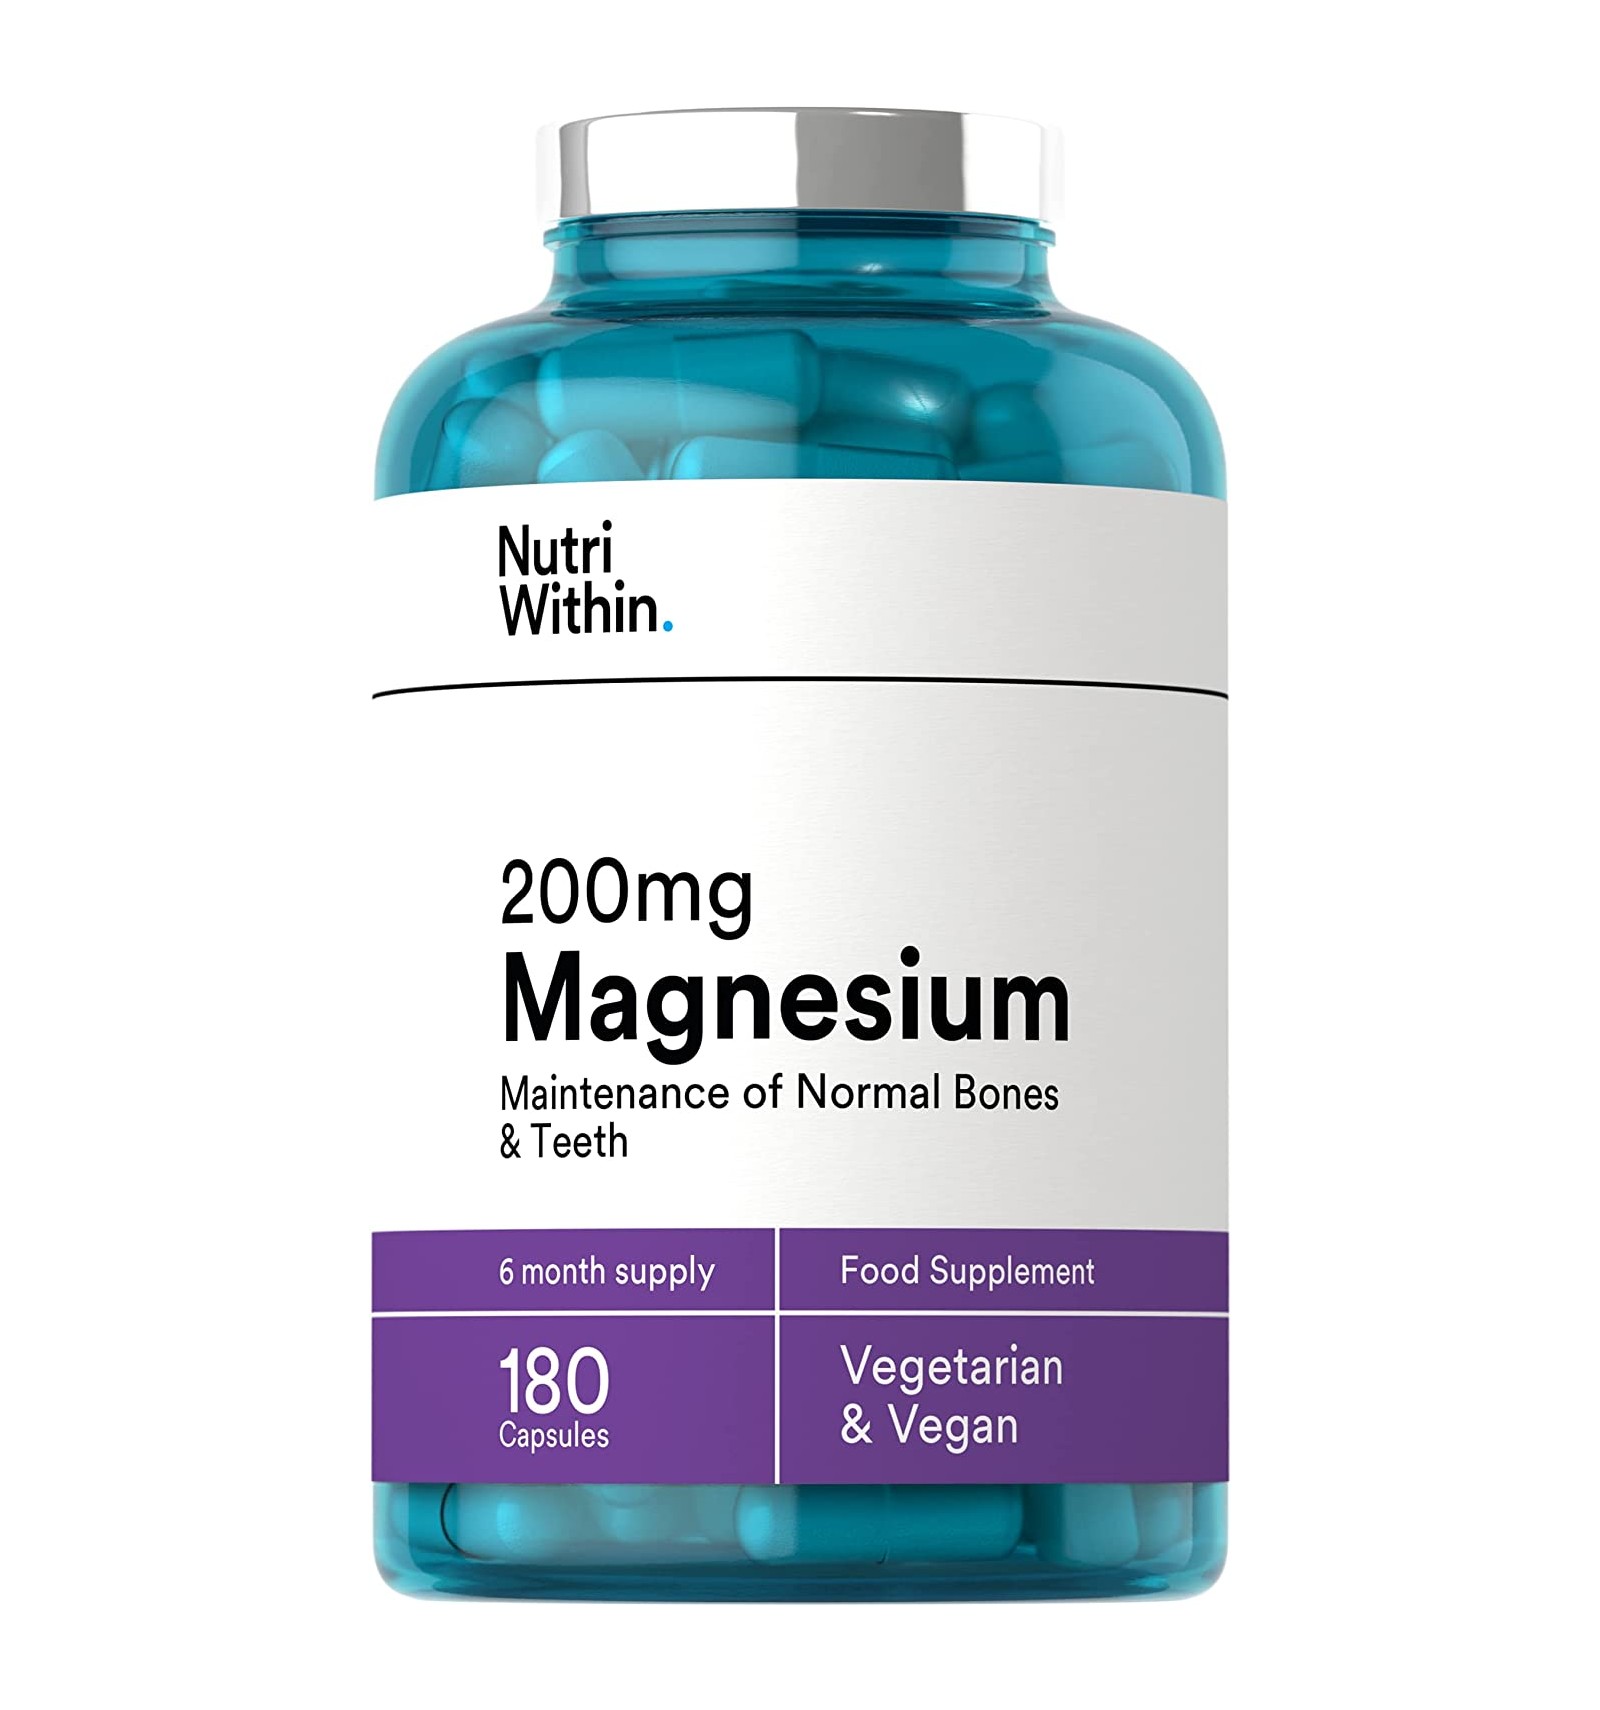 Nutri Within Magnesium Capsules 200mg - 180 Capsules